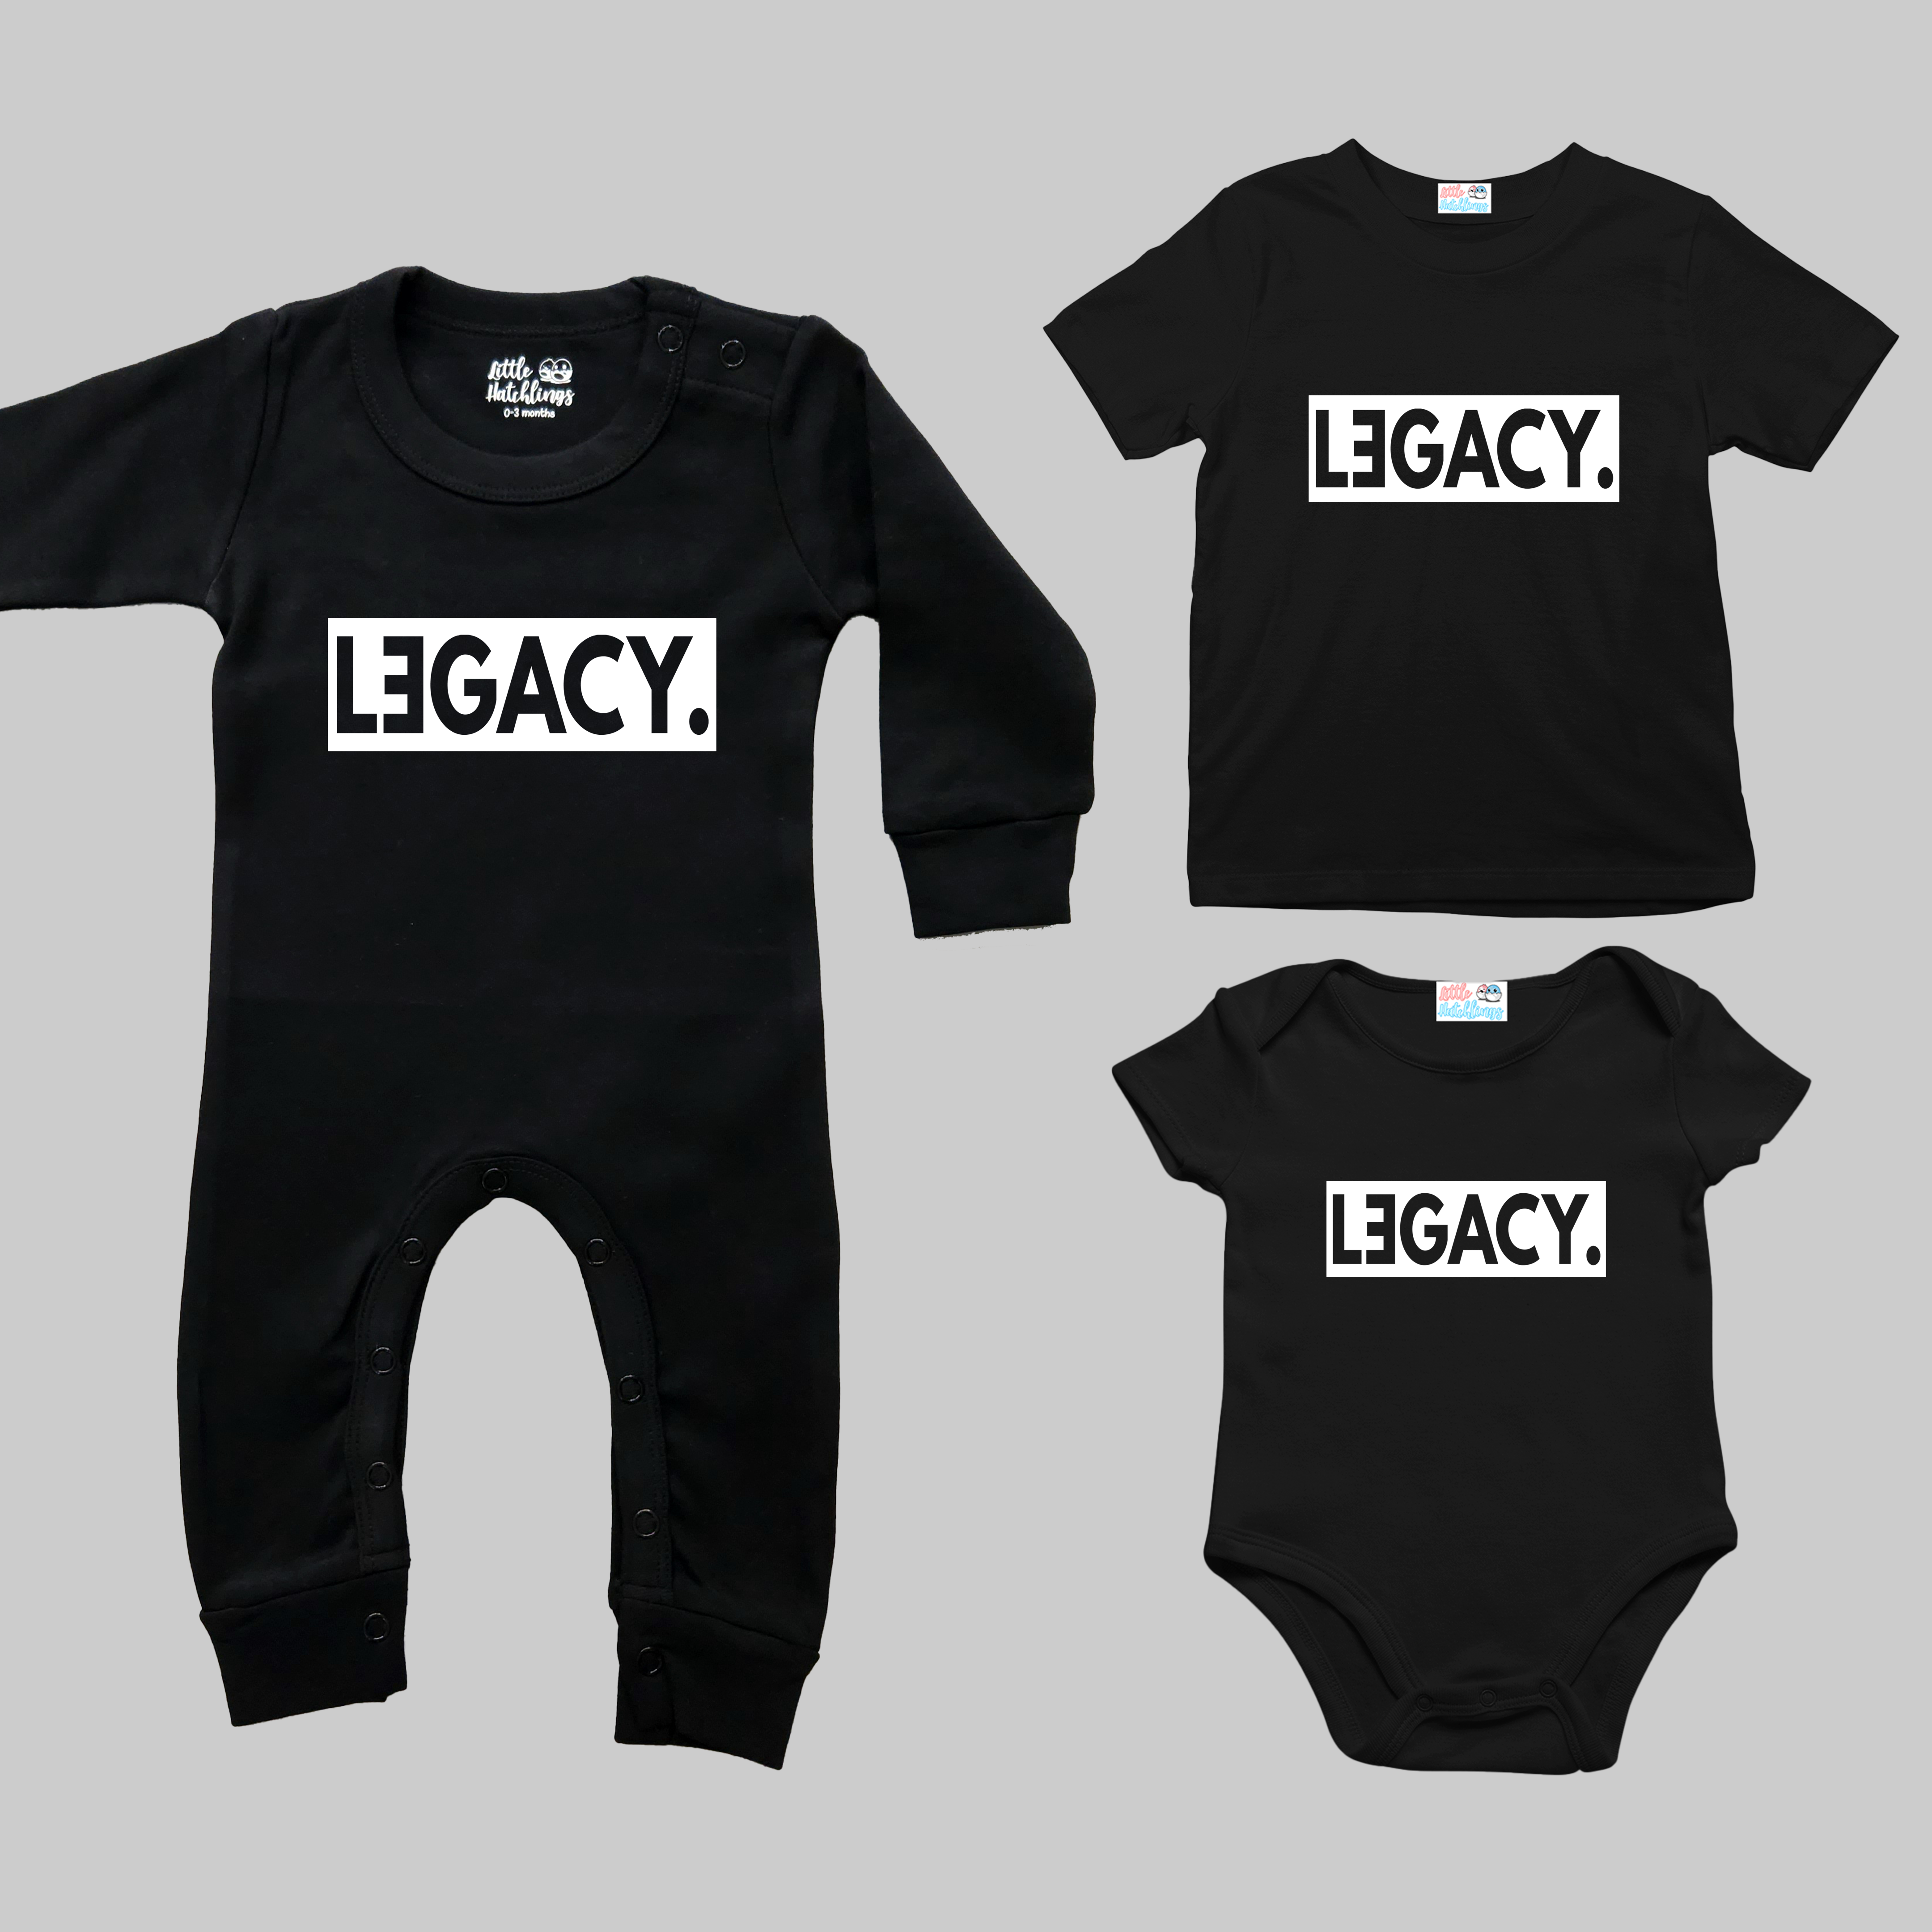 Legend Legacy Black Combo - Adult Tshirt + Full Romper